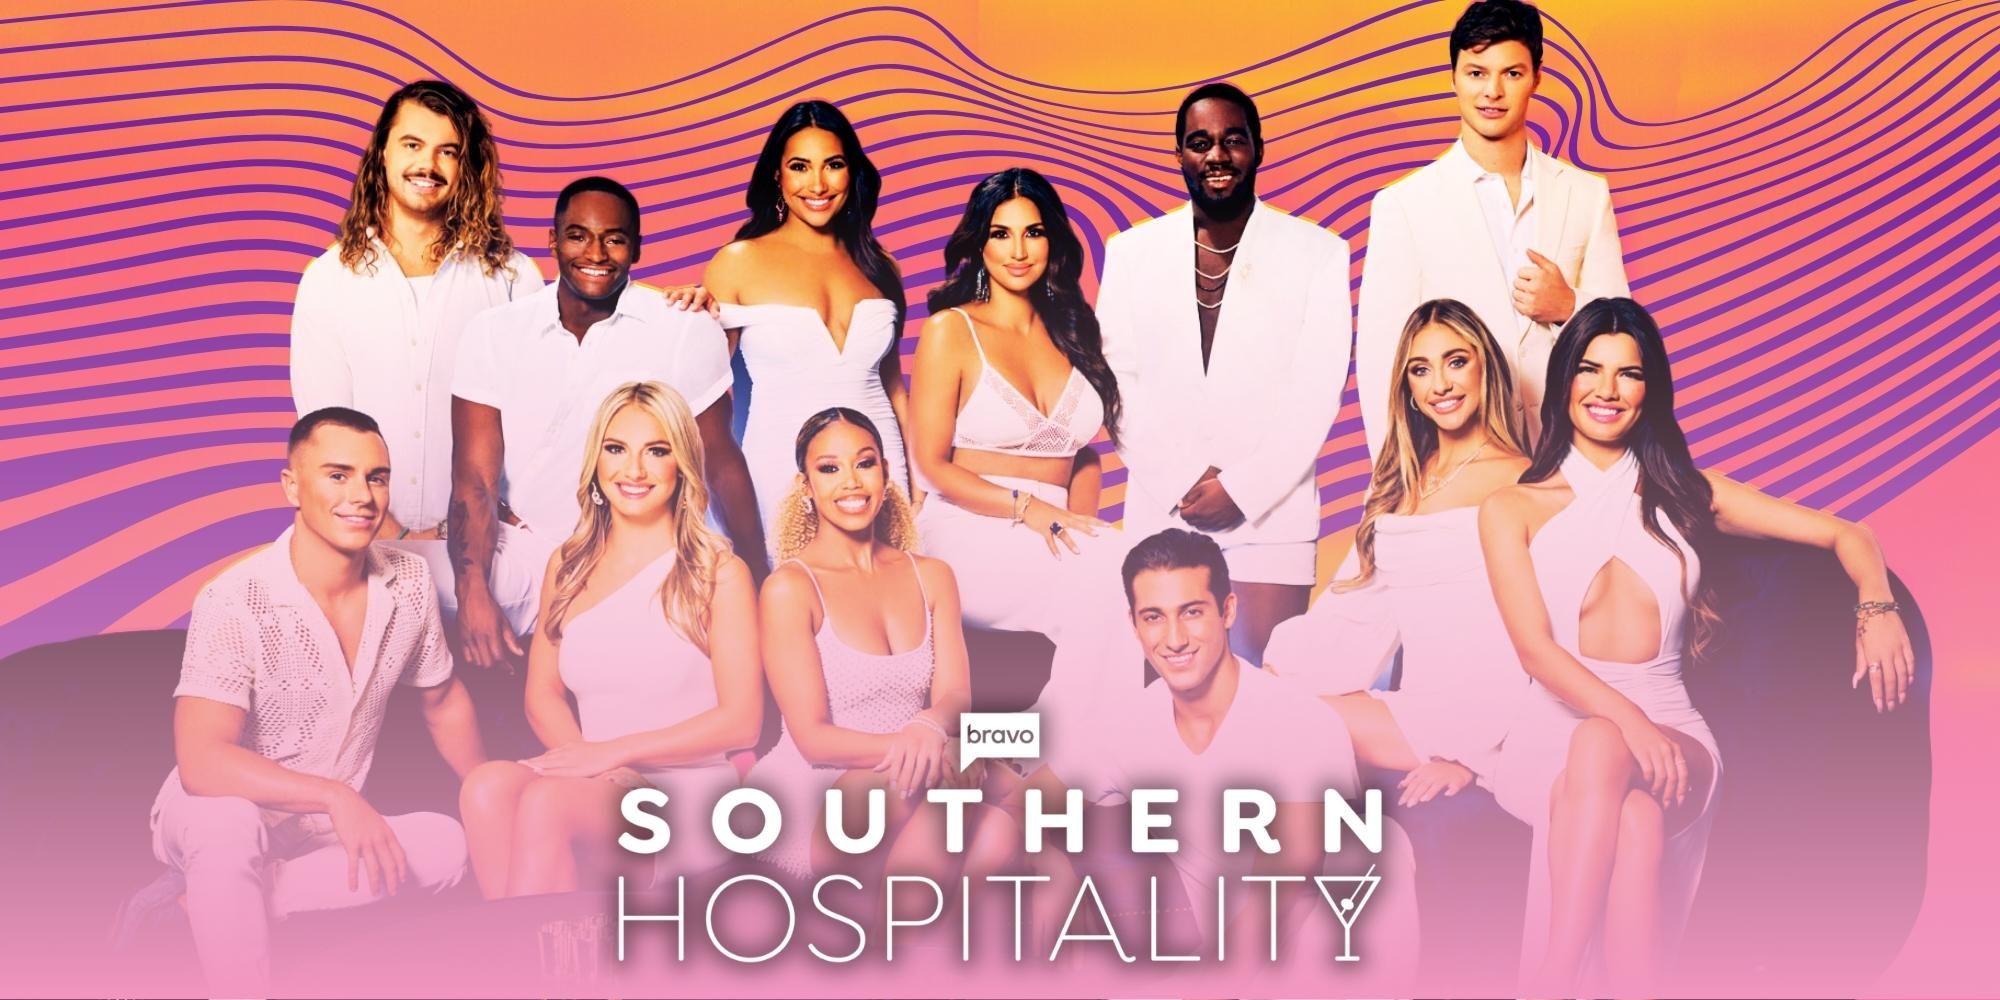 Temporada 3 de Southern Hospitality: últimas novedades y todo lo que sabemos